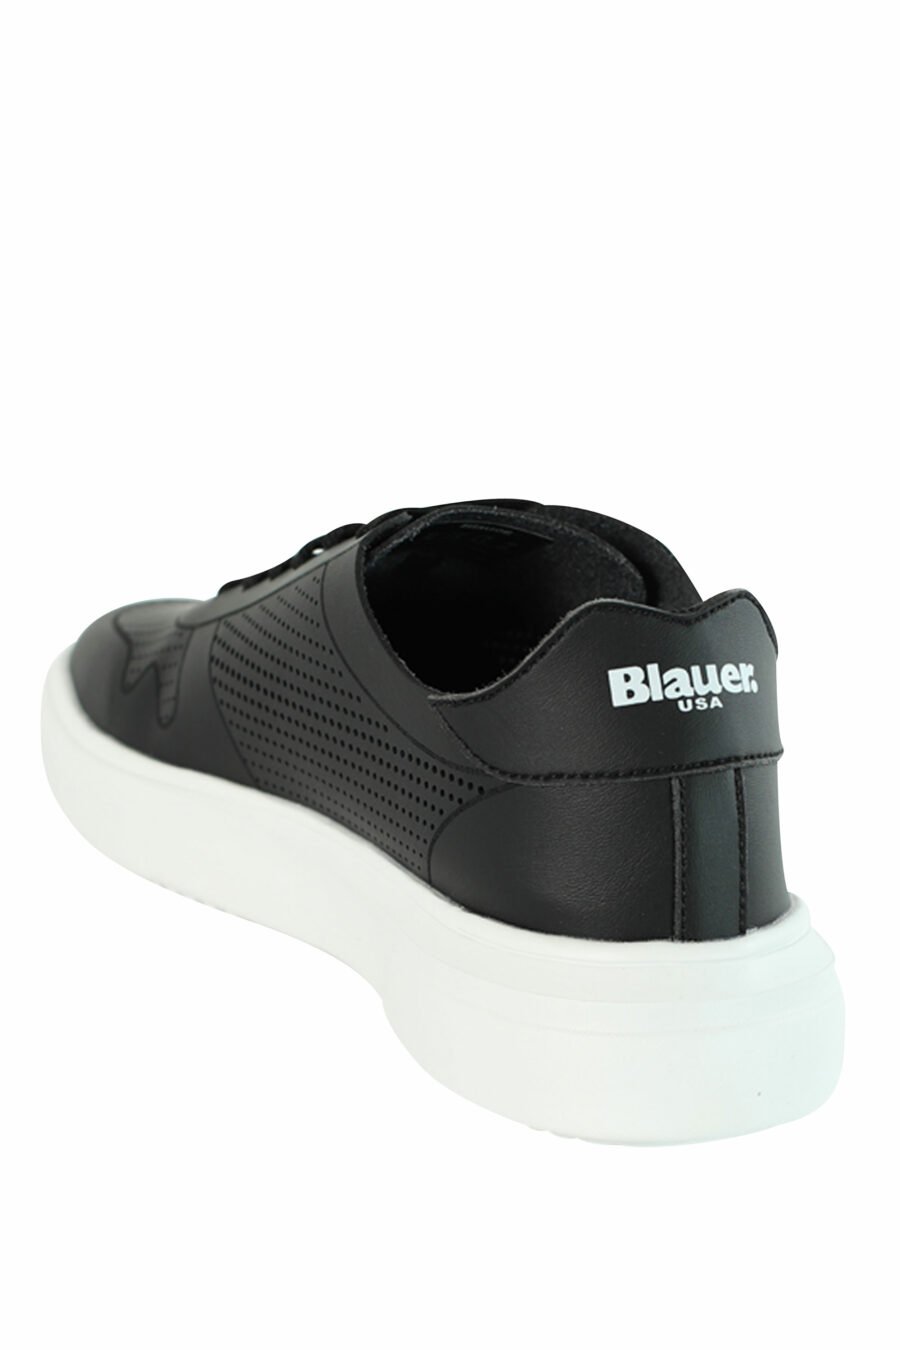 Sapatos "BLAIR" pretos respiráveis com logótipo branco - 8058156492004 4